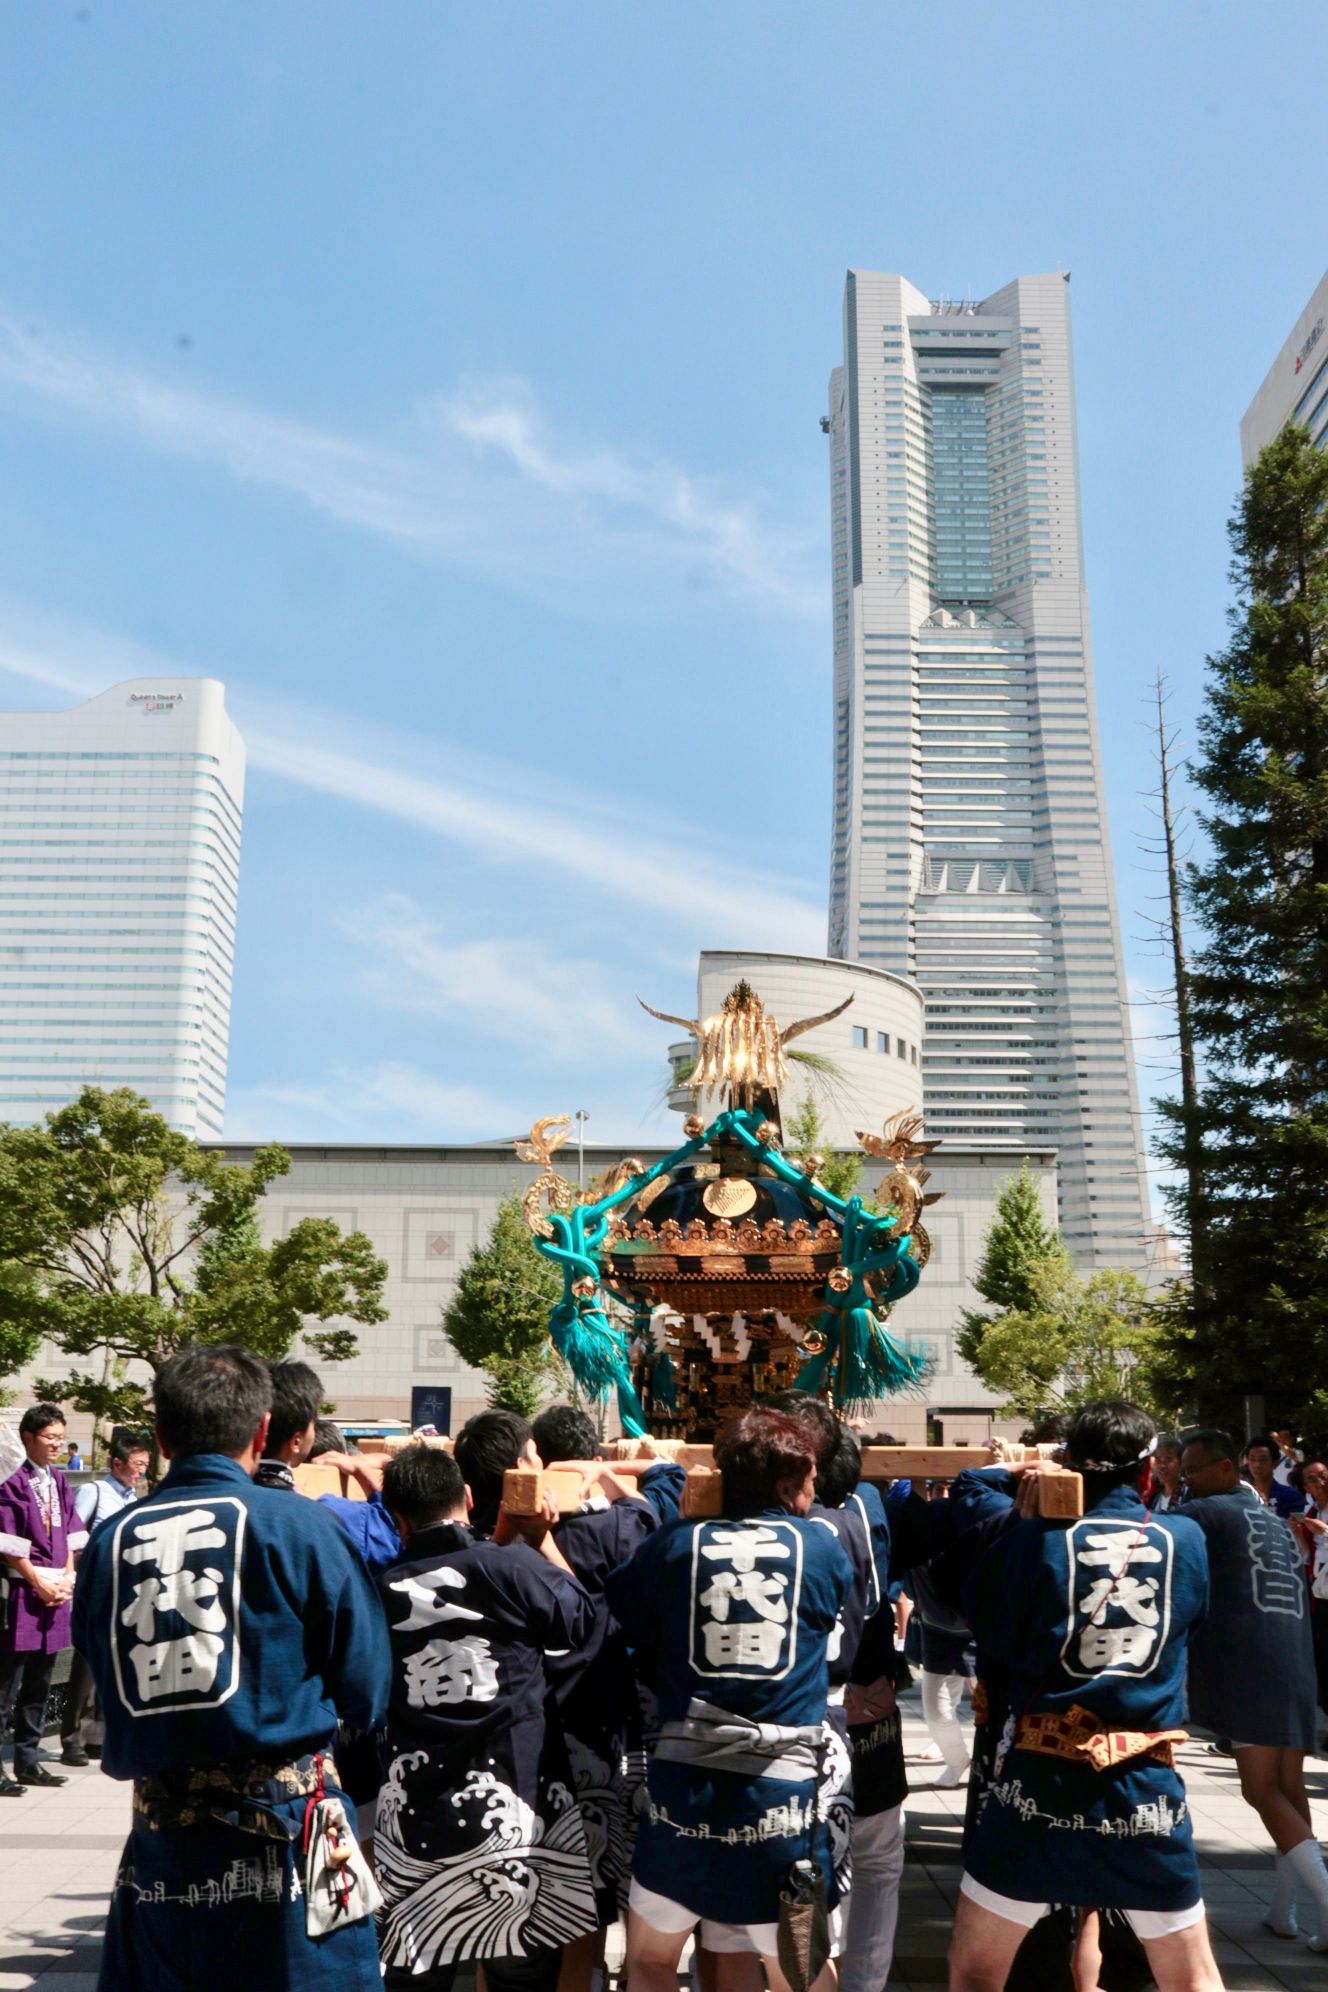 グランモール公園夏祭り19 公式 横浜市観光情報サイト Yokohama Official Visitors Guide